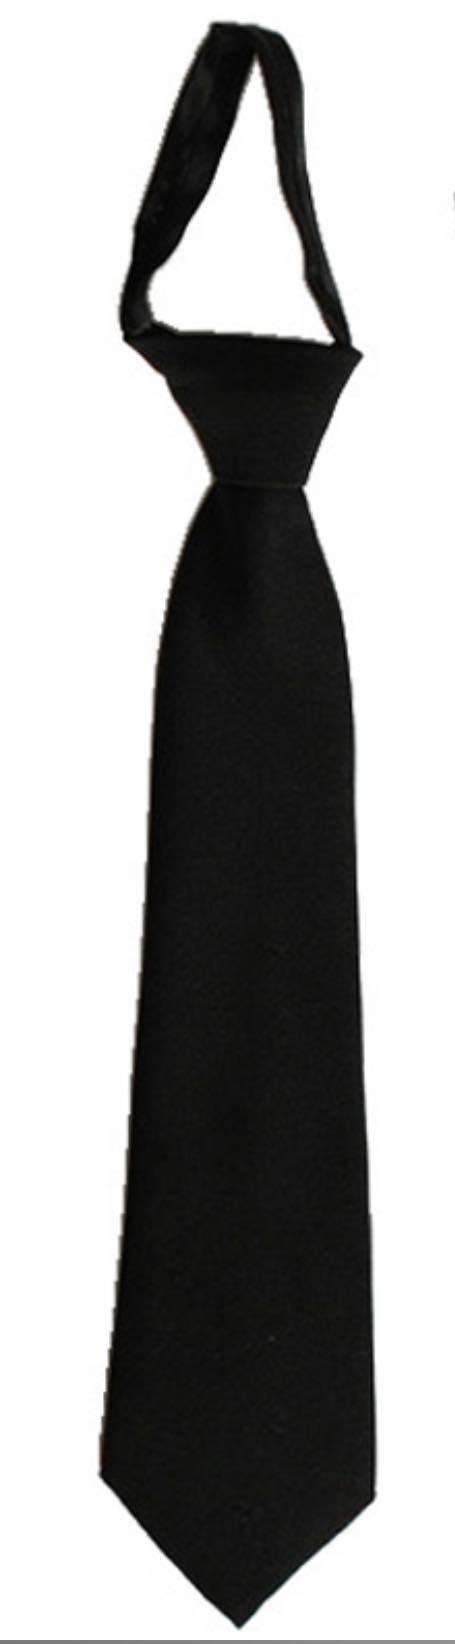 black zipper tie